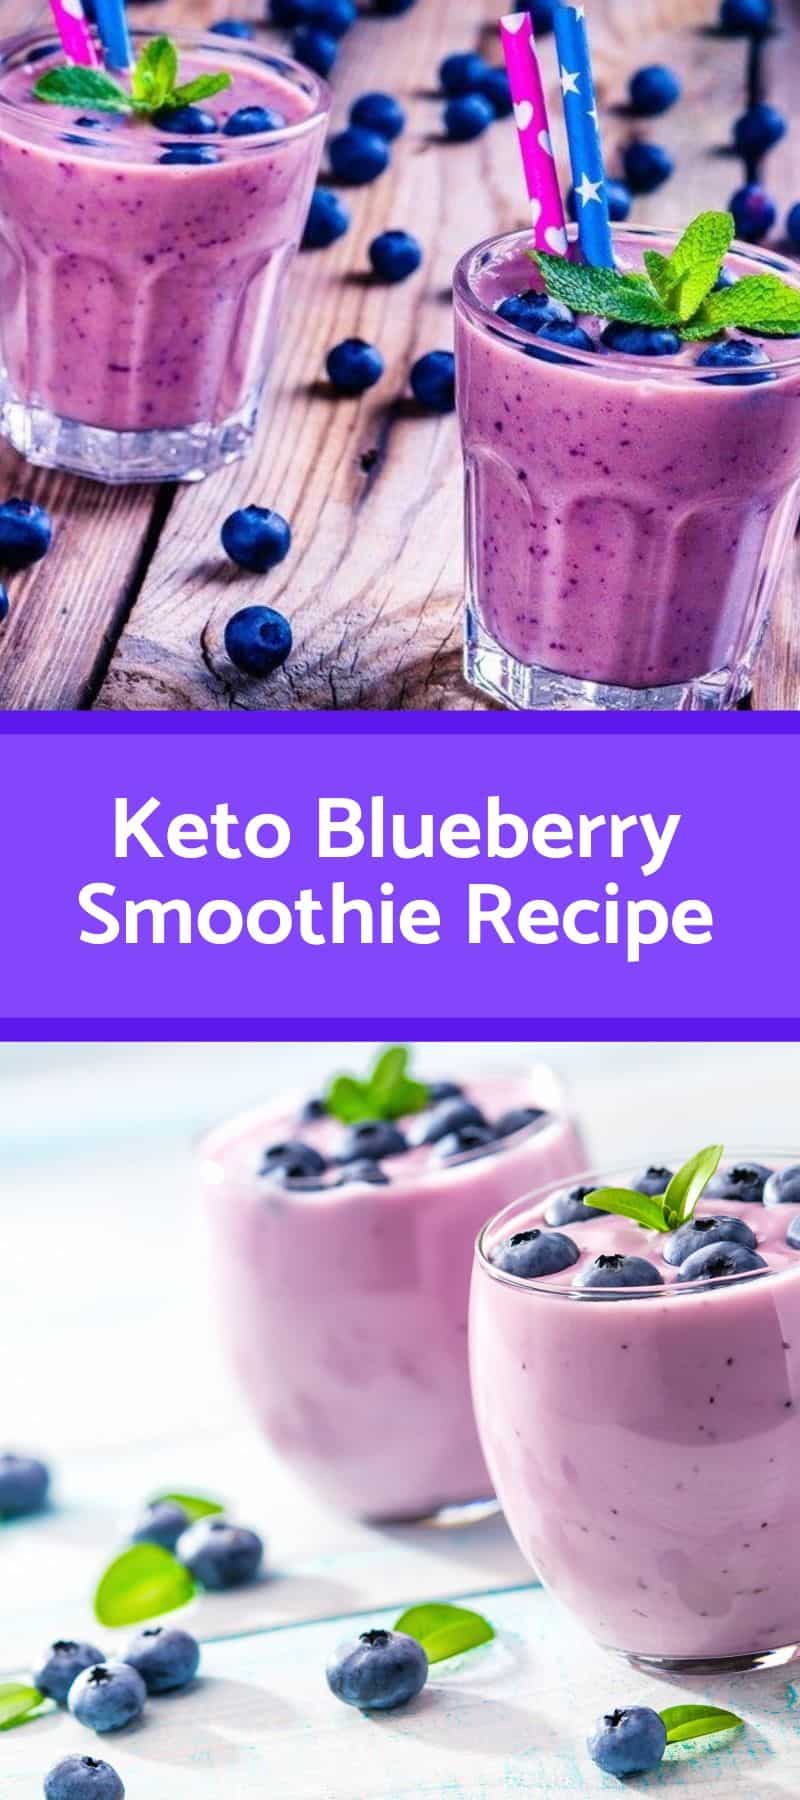 Keto Blueberry Smoothie Recipe 3